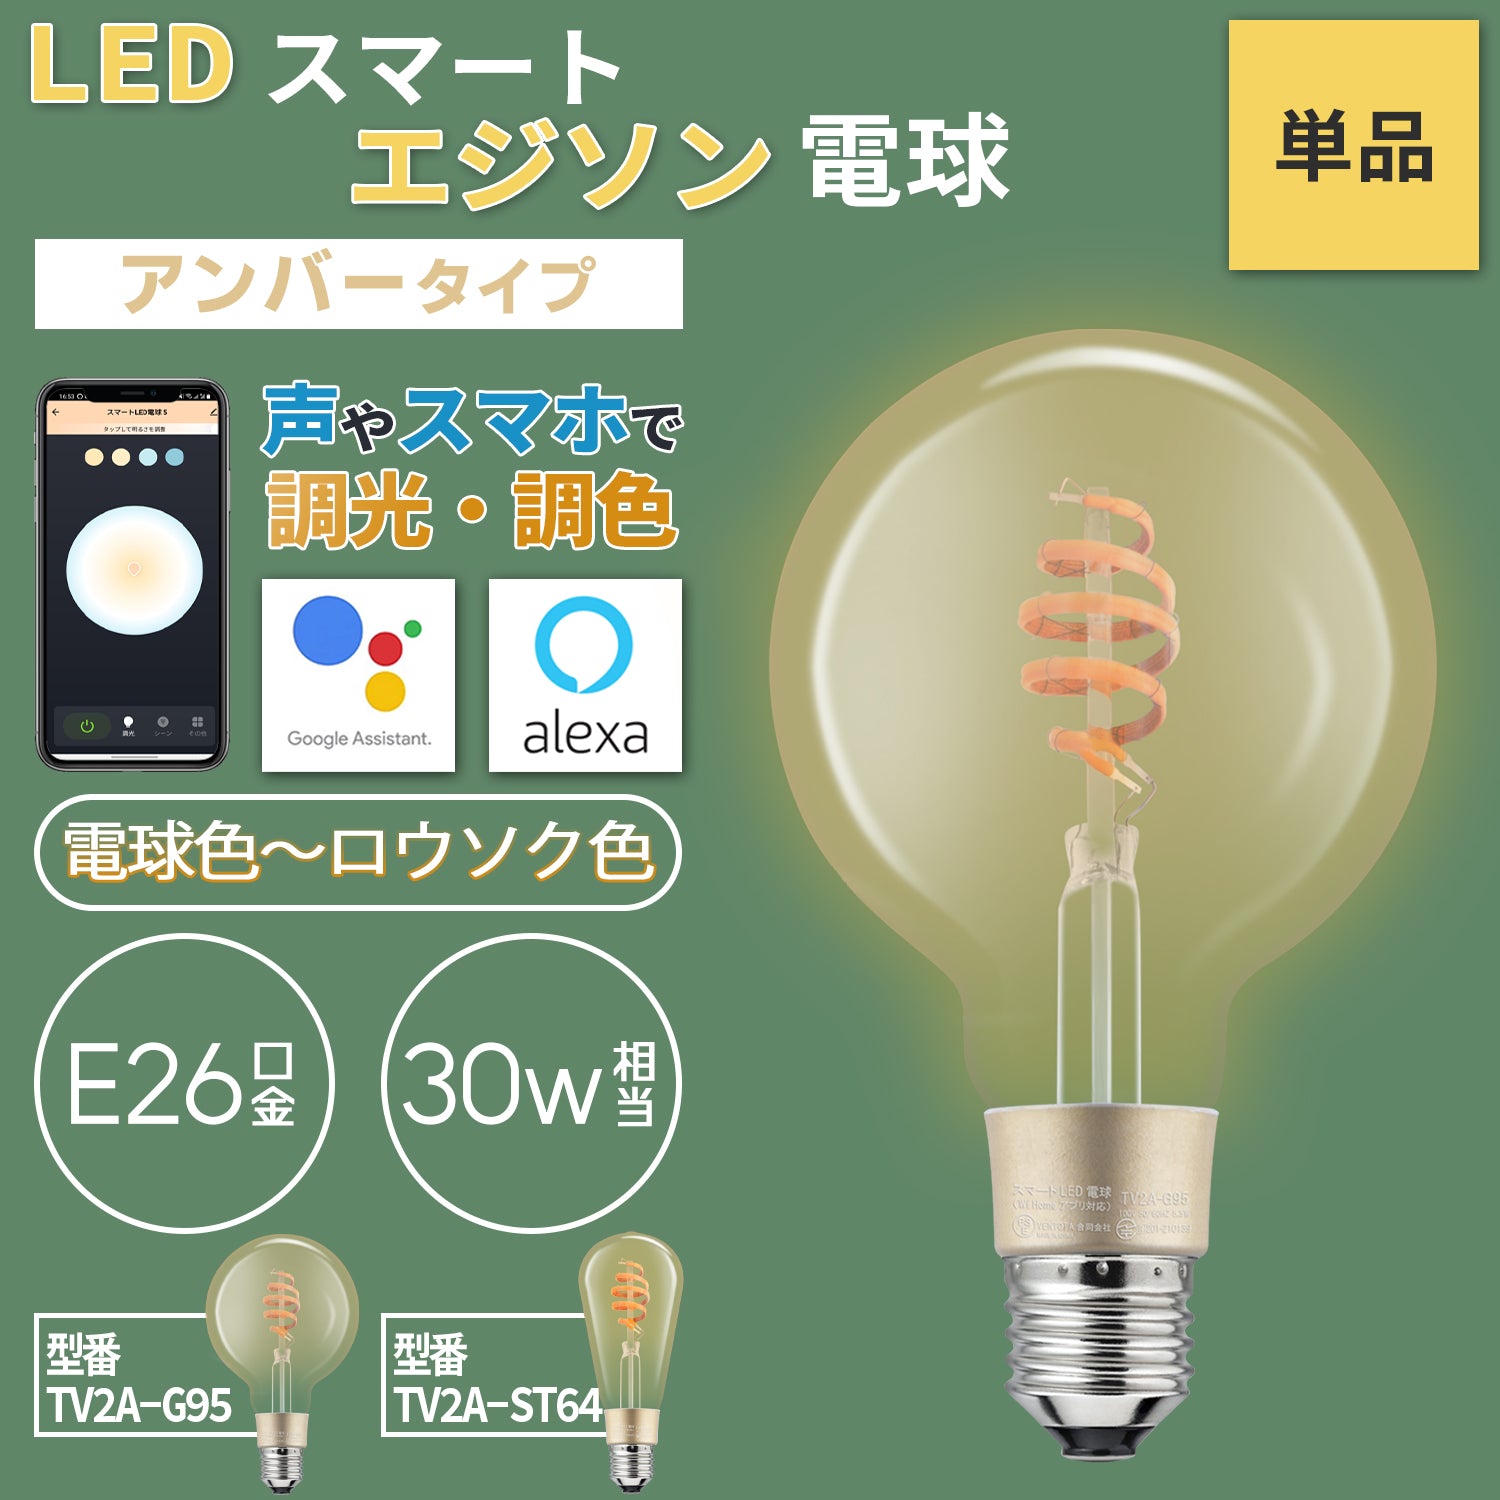 【照明器具】IoTスマートエジソンLED電球【アンバータイプ】